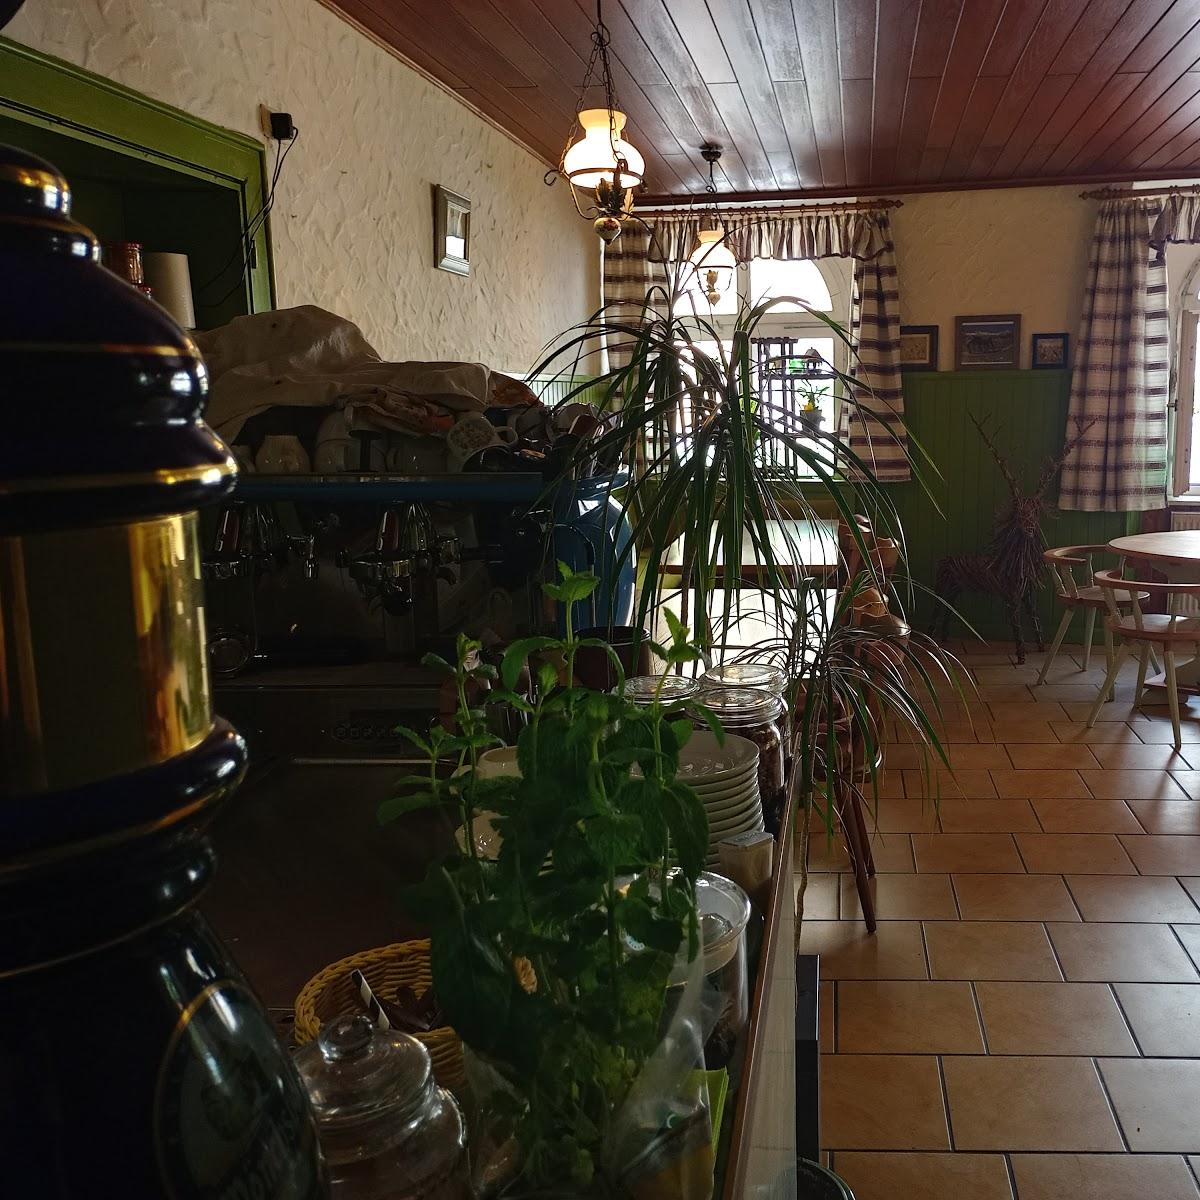 Restaurant "Polka Cafe" in Schwarzenbach an der Saale